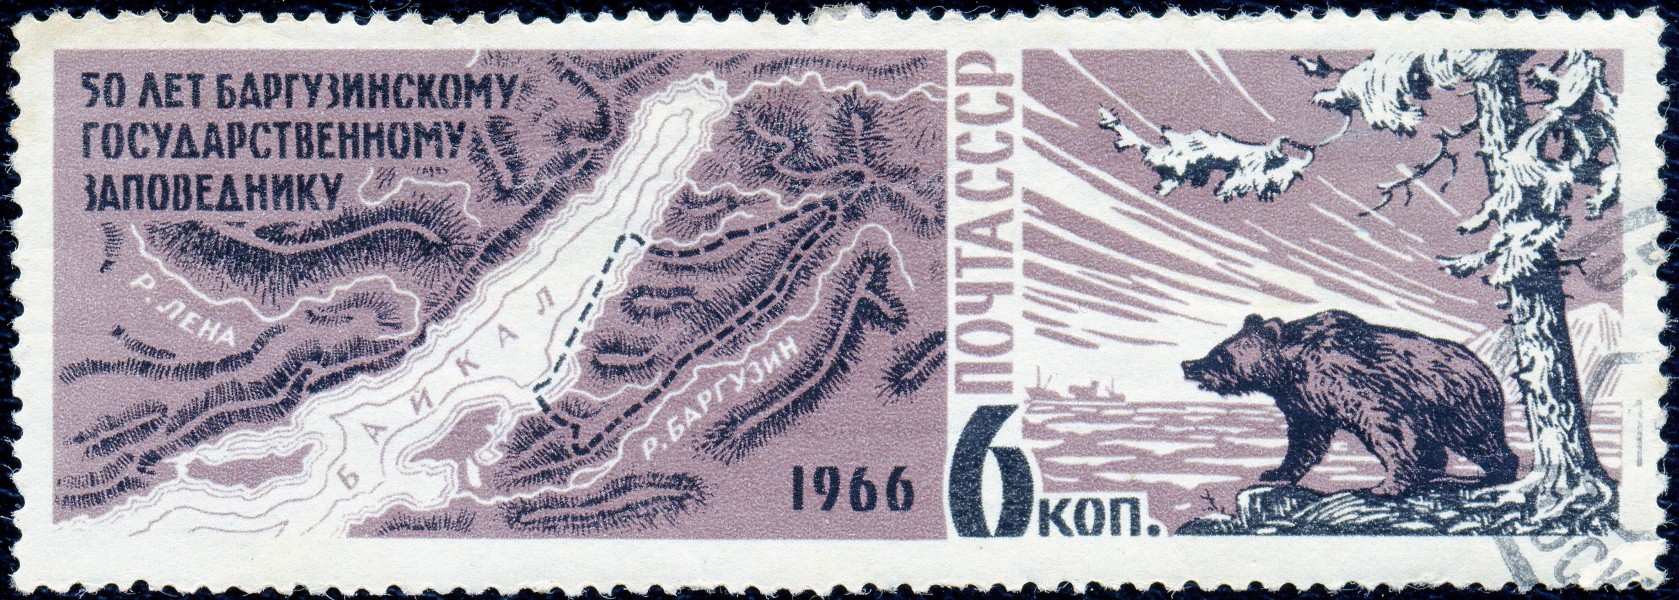 1966. 50 лет баргузинскому государственному заповеднику